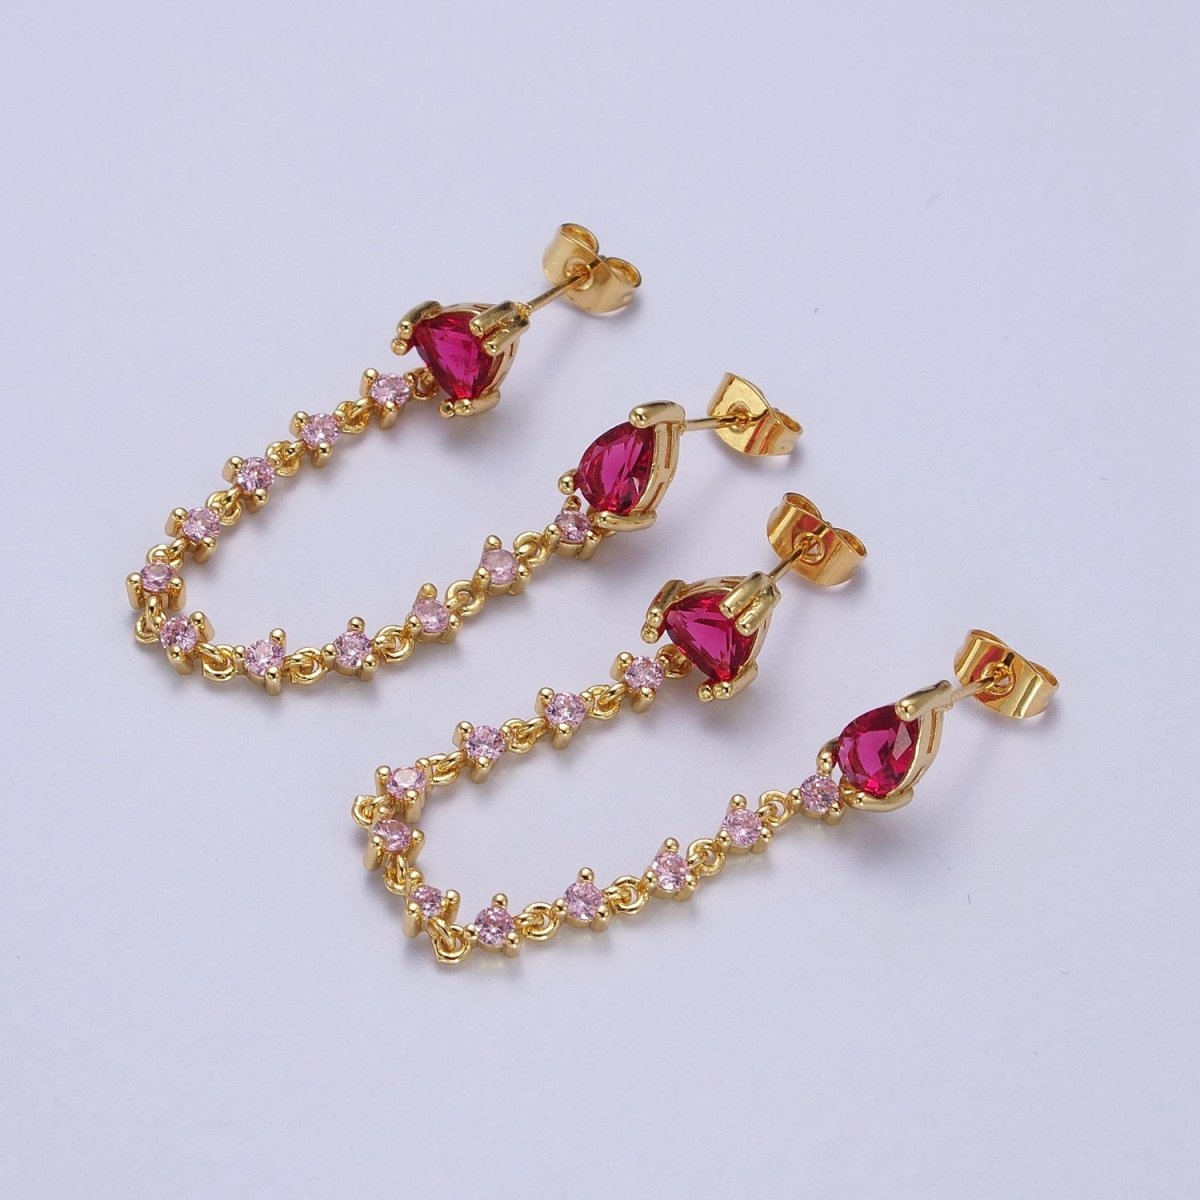 24K Gold Filled Pink Cubic Zirconia Chain Link Double Fuchsia Teardrop Stud Earrings | Y-117 - DLUXCA